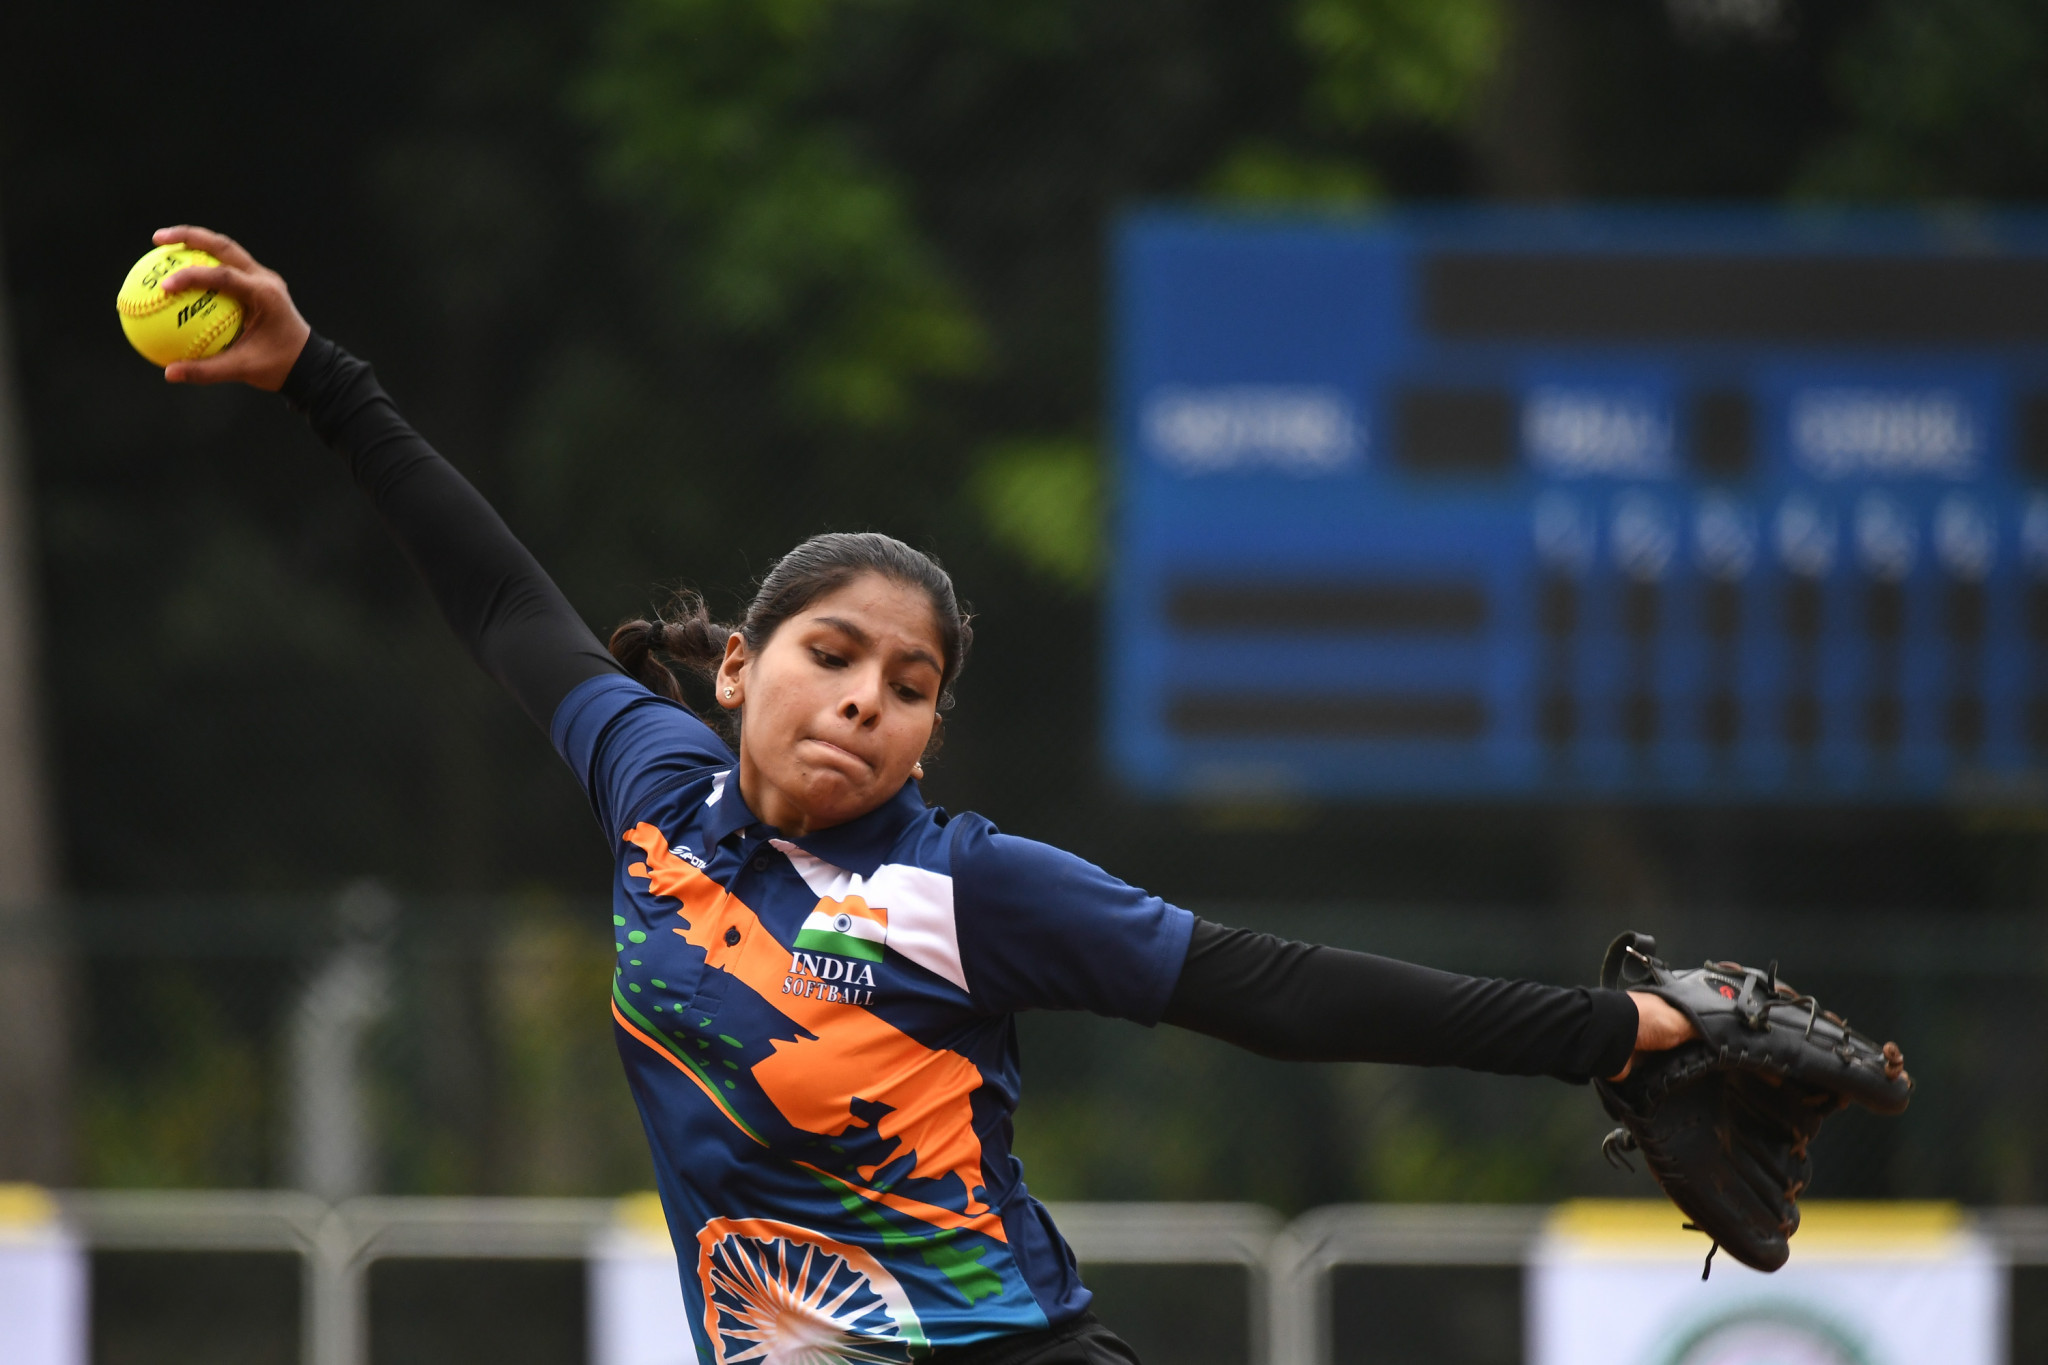 Indian women’s softball team set to make Asian Games debut at Hangzhou 2022